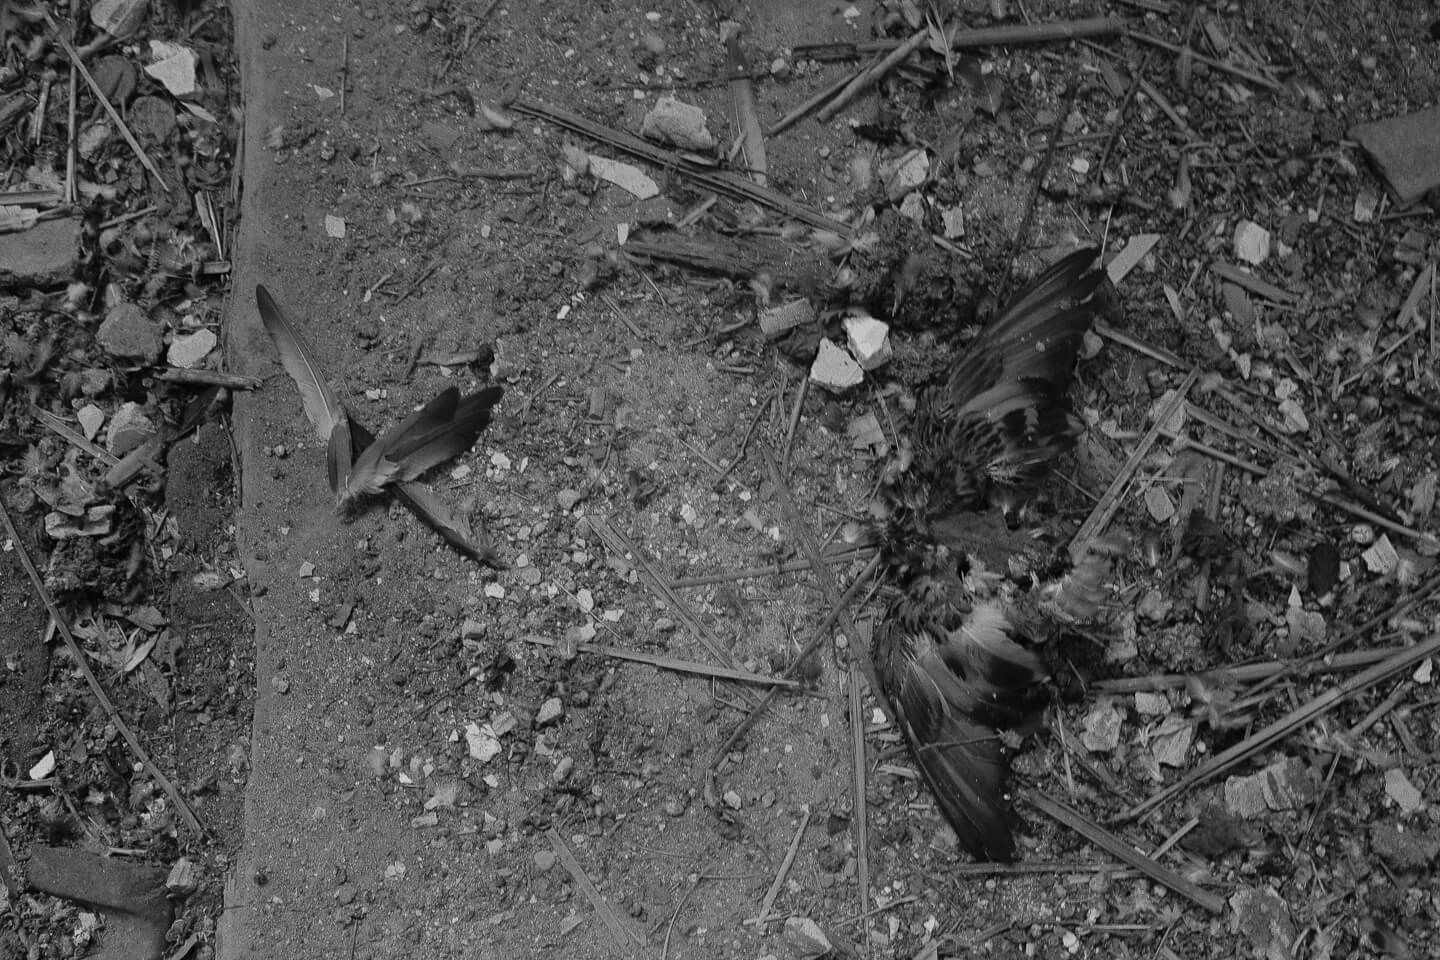 Dead dove inside Pilica Cultural Centre.